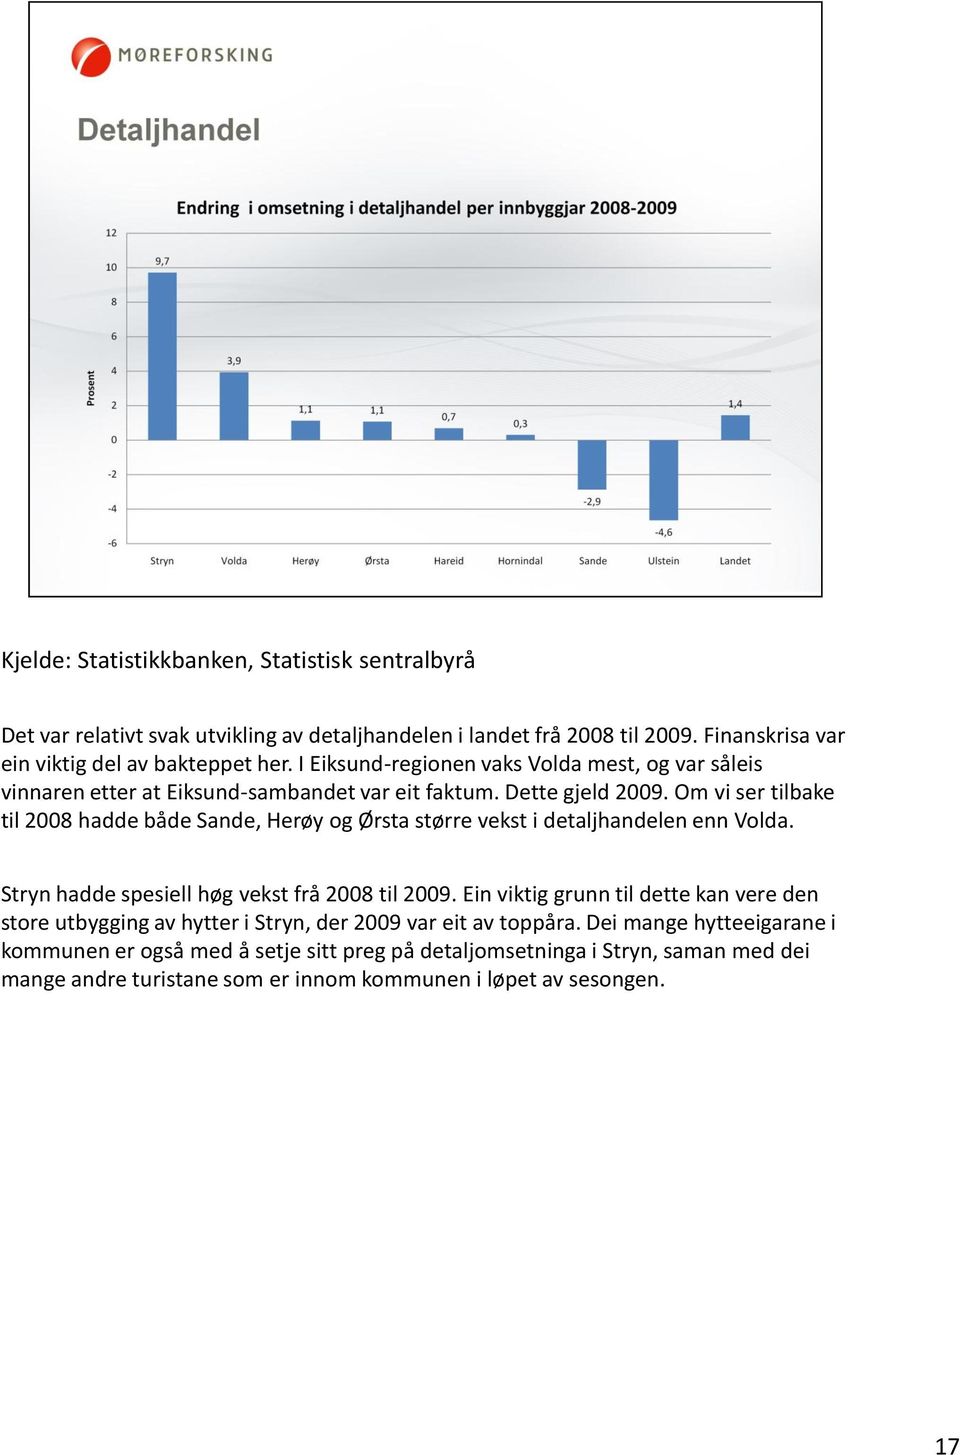 Om vi ser tilbake til 2008 hadde både Sande, Herøy og Ørsta større vekst i detaljhandelen enn Volda. Stryn hadde spesiell høg vekst frå 2008 til 2009.